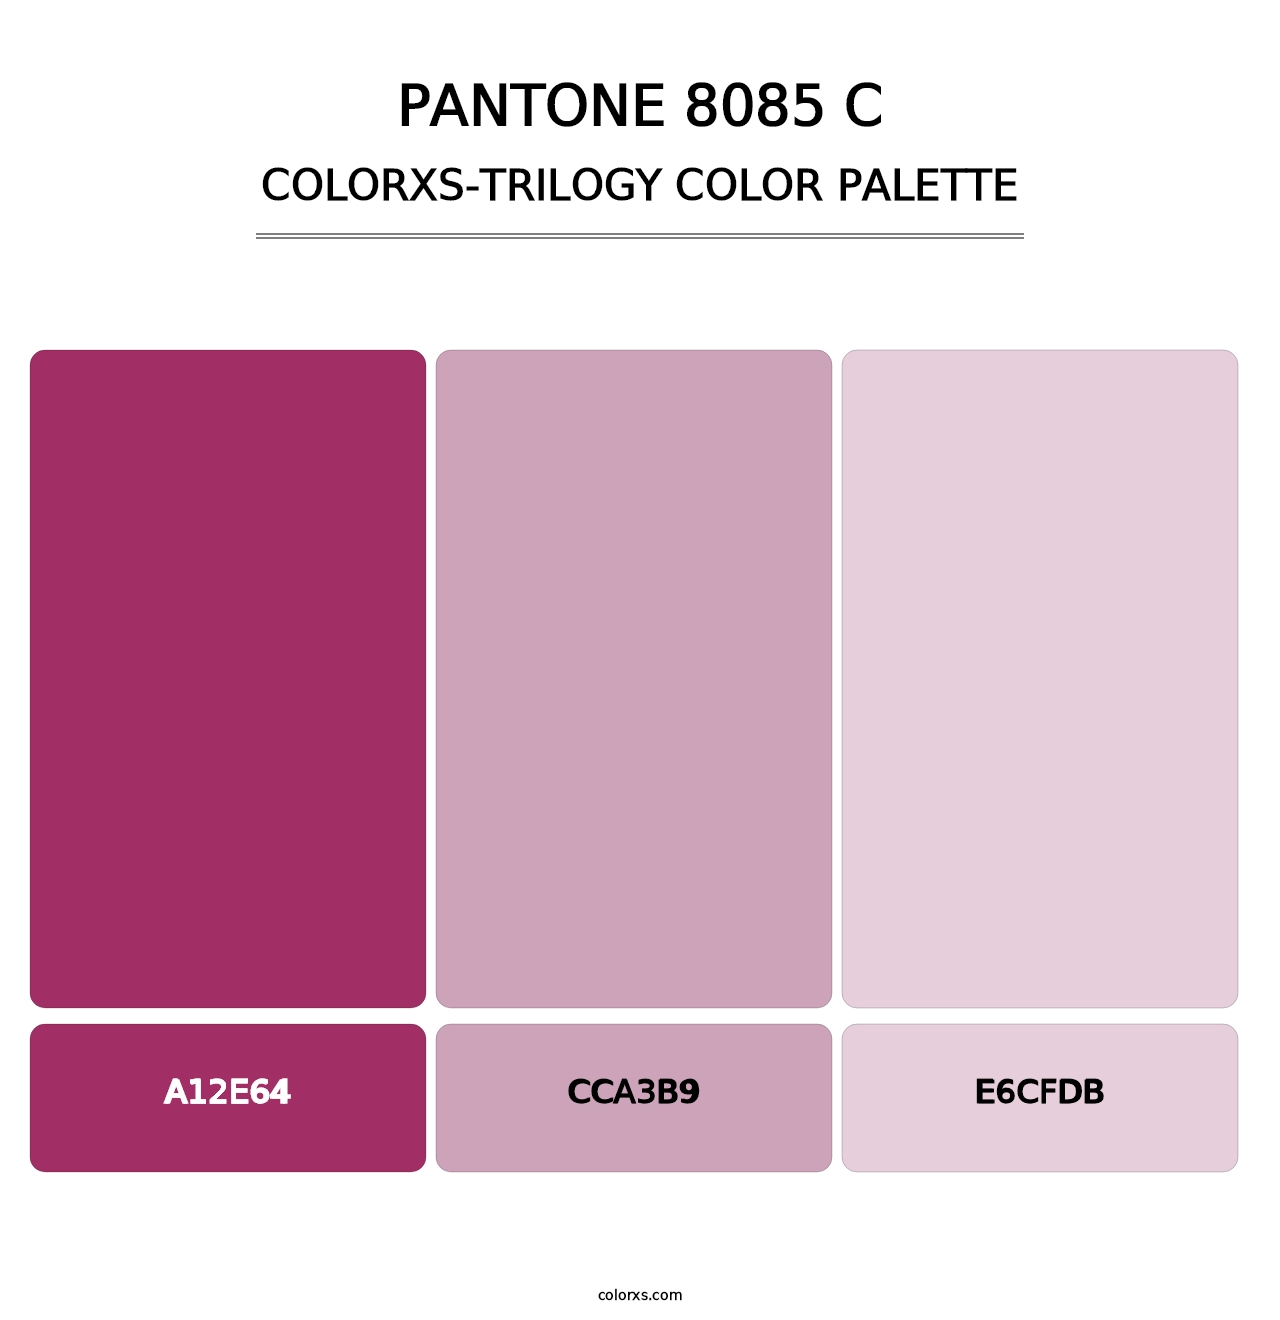 PANTONE 8085 C - Colorxs Trilogy Palette